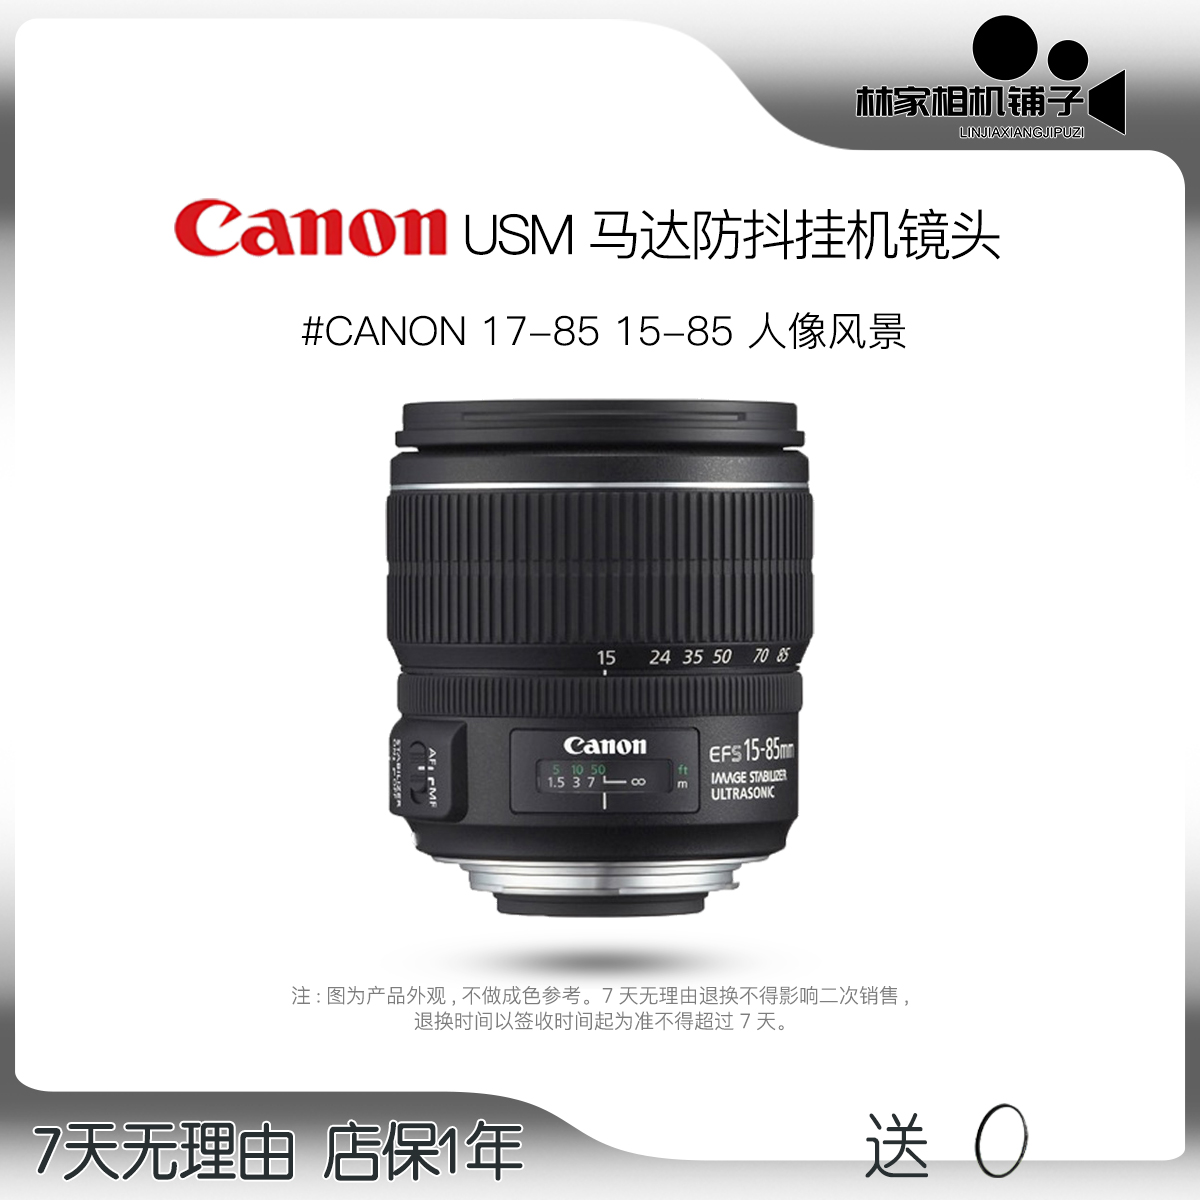 Canon/キヤノン EF-S 17-85 15-85 IS USM 広角ズーム一眼レフ ハーフサイズ手ブレ補正レンズ